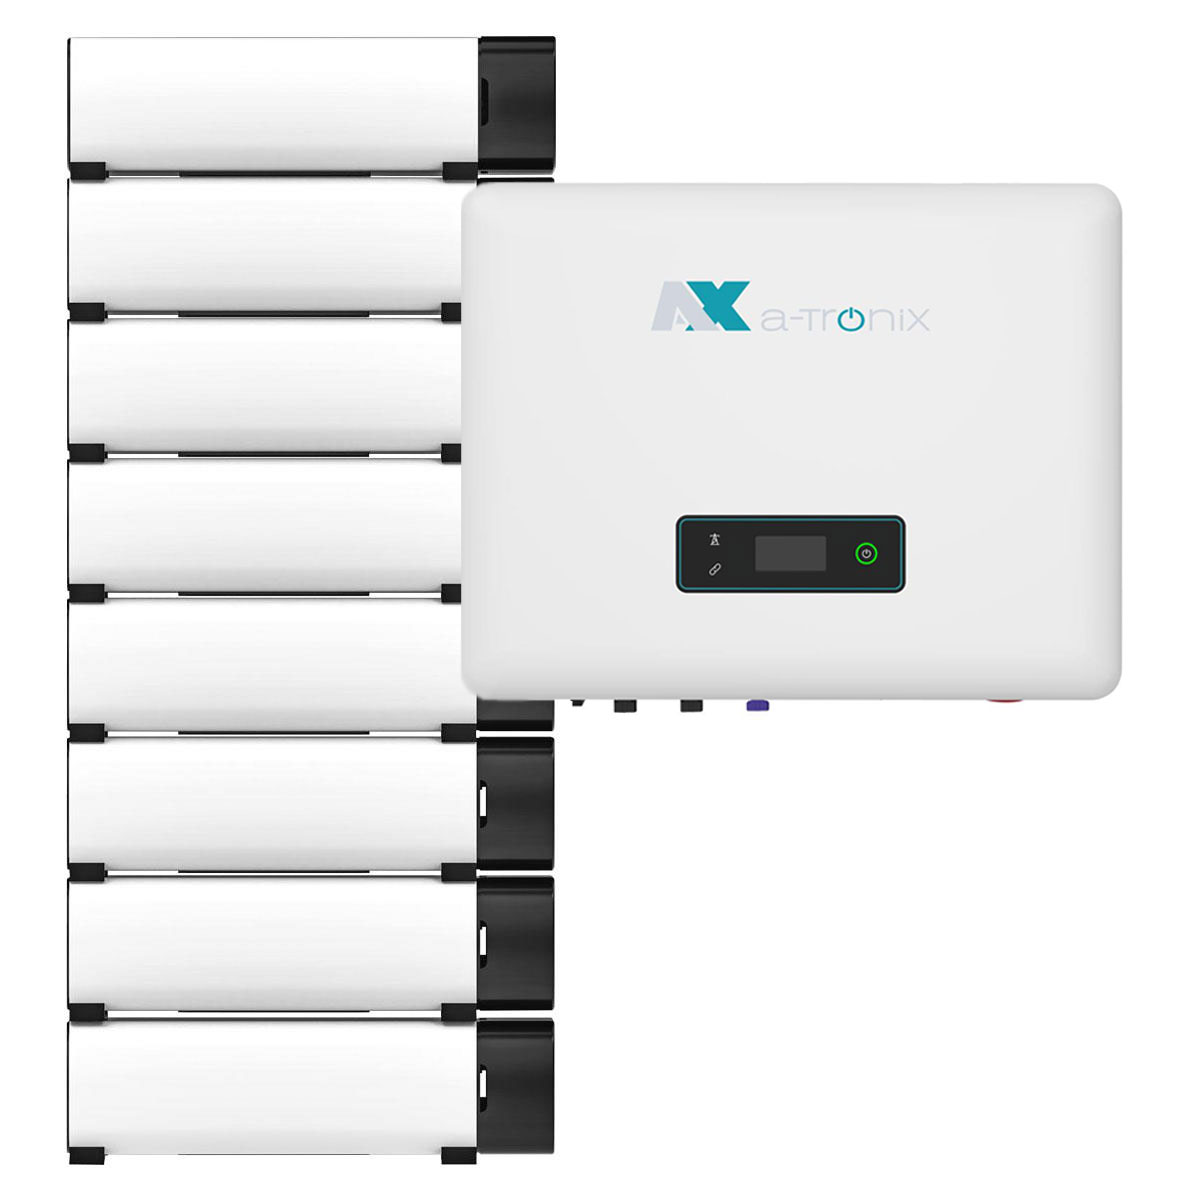 a-TroniX Hybridpower AX2 12kW Hybrid Wechselrichter mit 16,1kWh Solarspeicher-Set